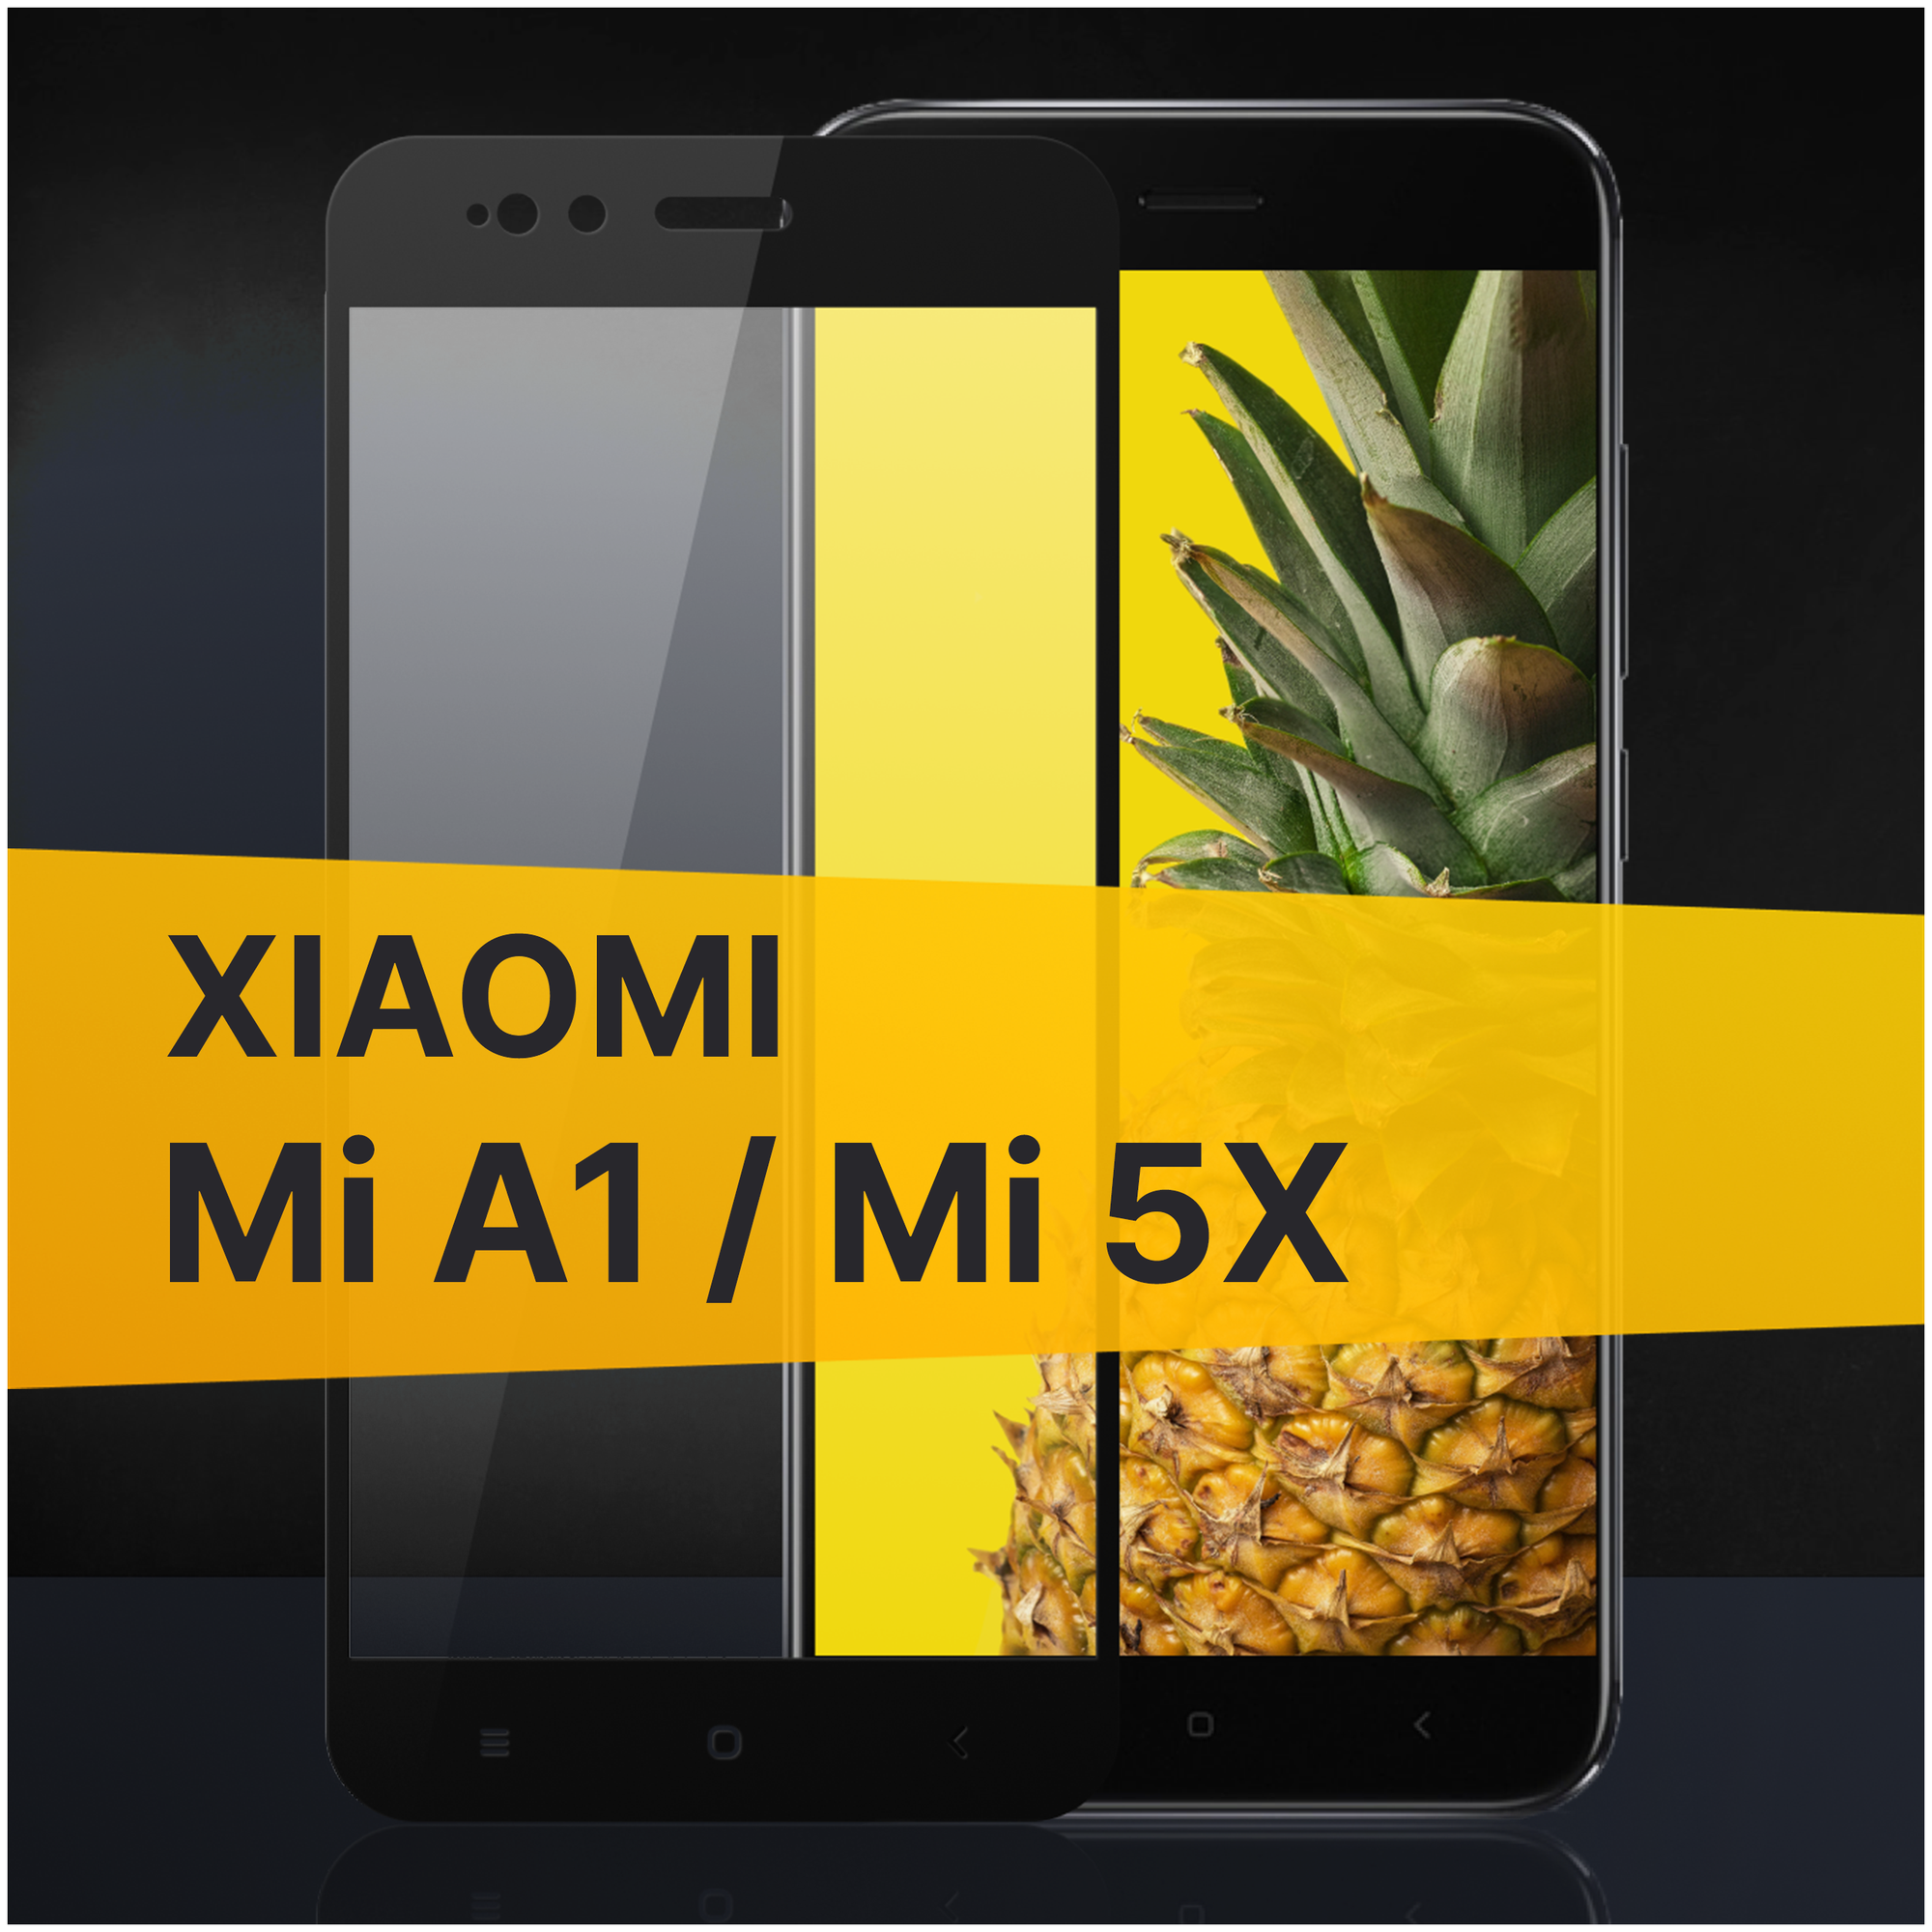 Противоударное защитное стекло для телефона Xiaomi Mi A1 и Mi 5X / Полноклеевое 3D стекло с олеофобным покрытием на смартфон Сяоми Ми А1 и Ми 5Х / С черной рамкой